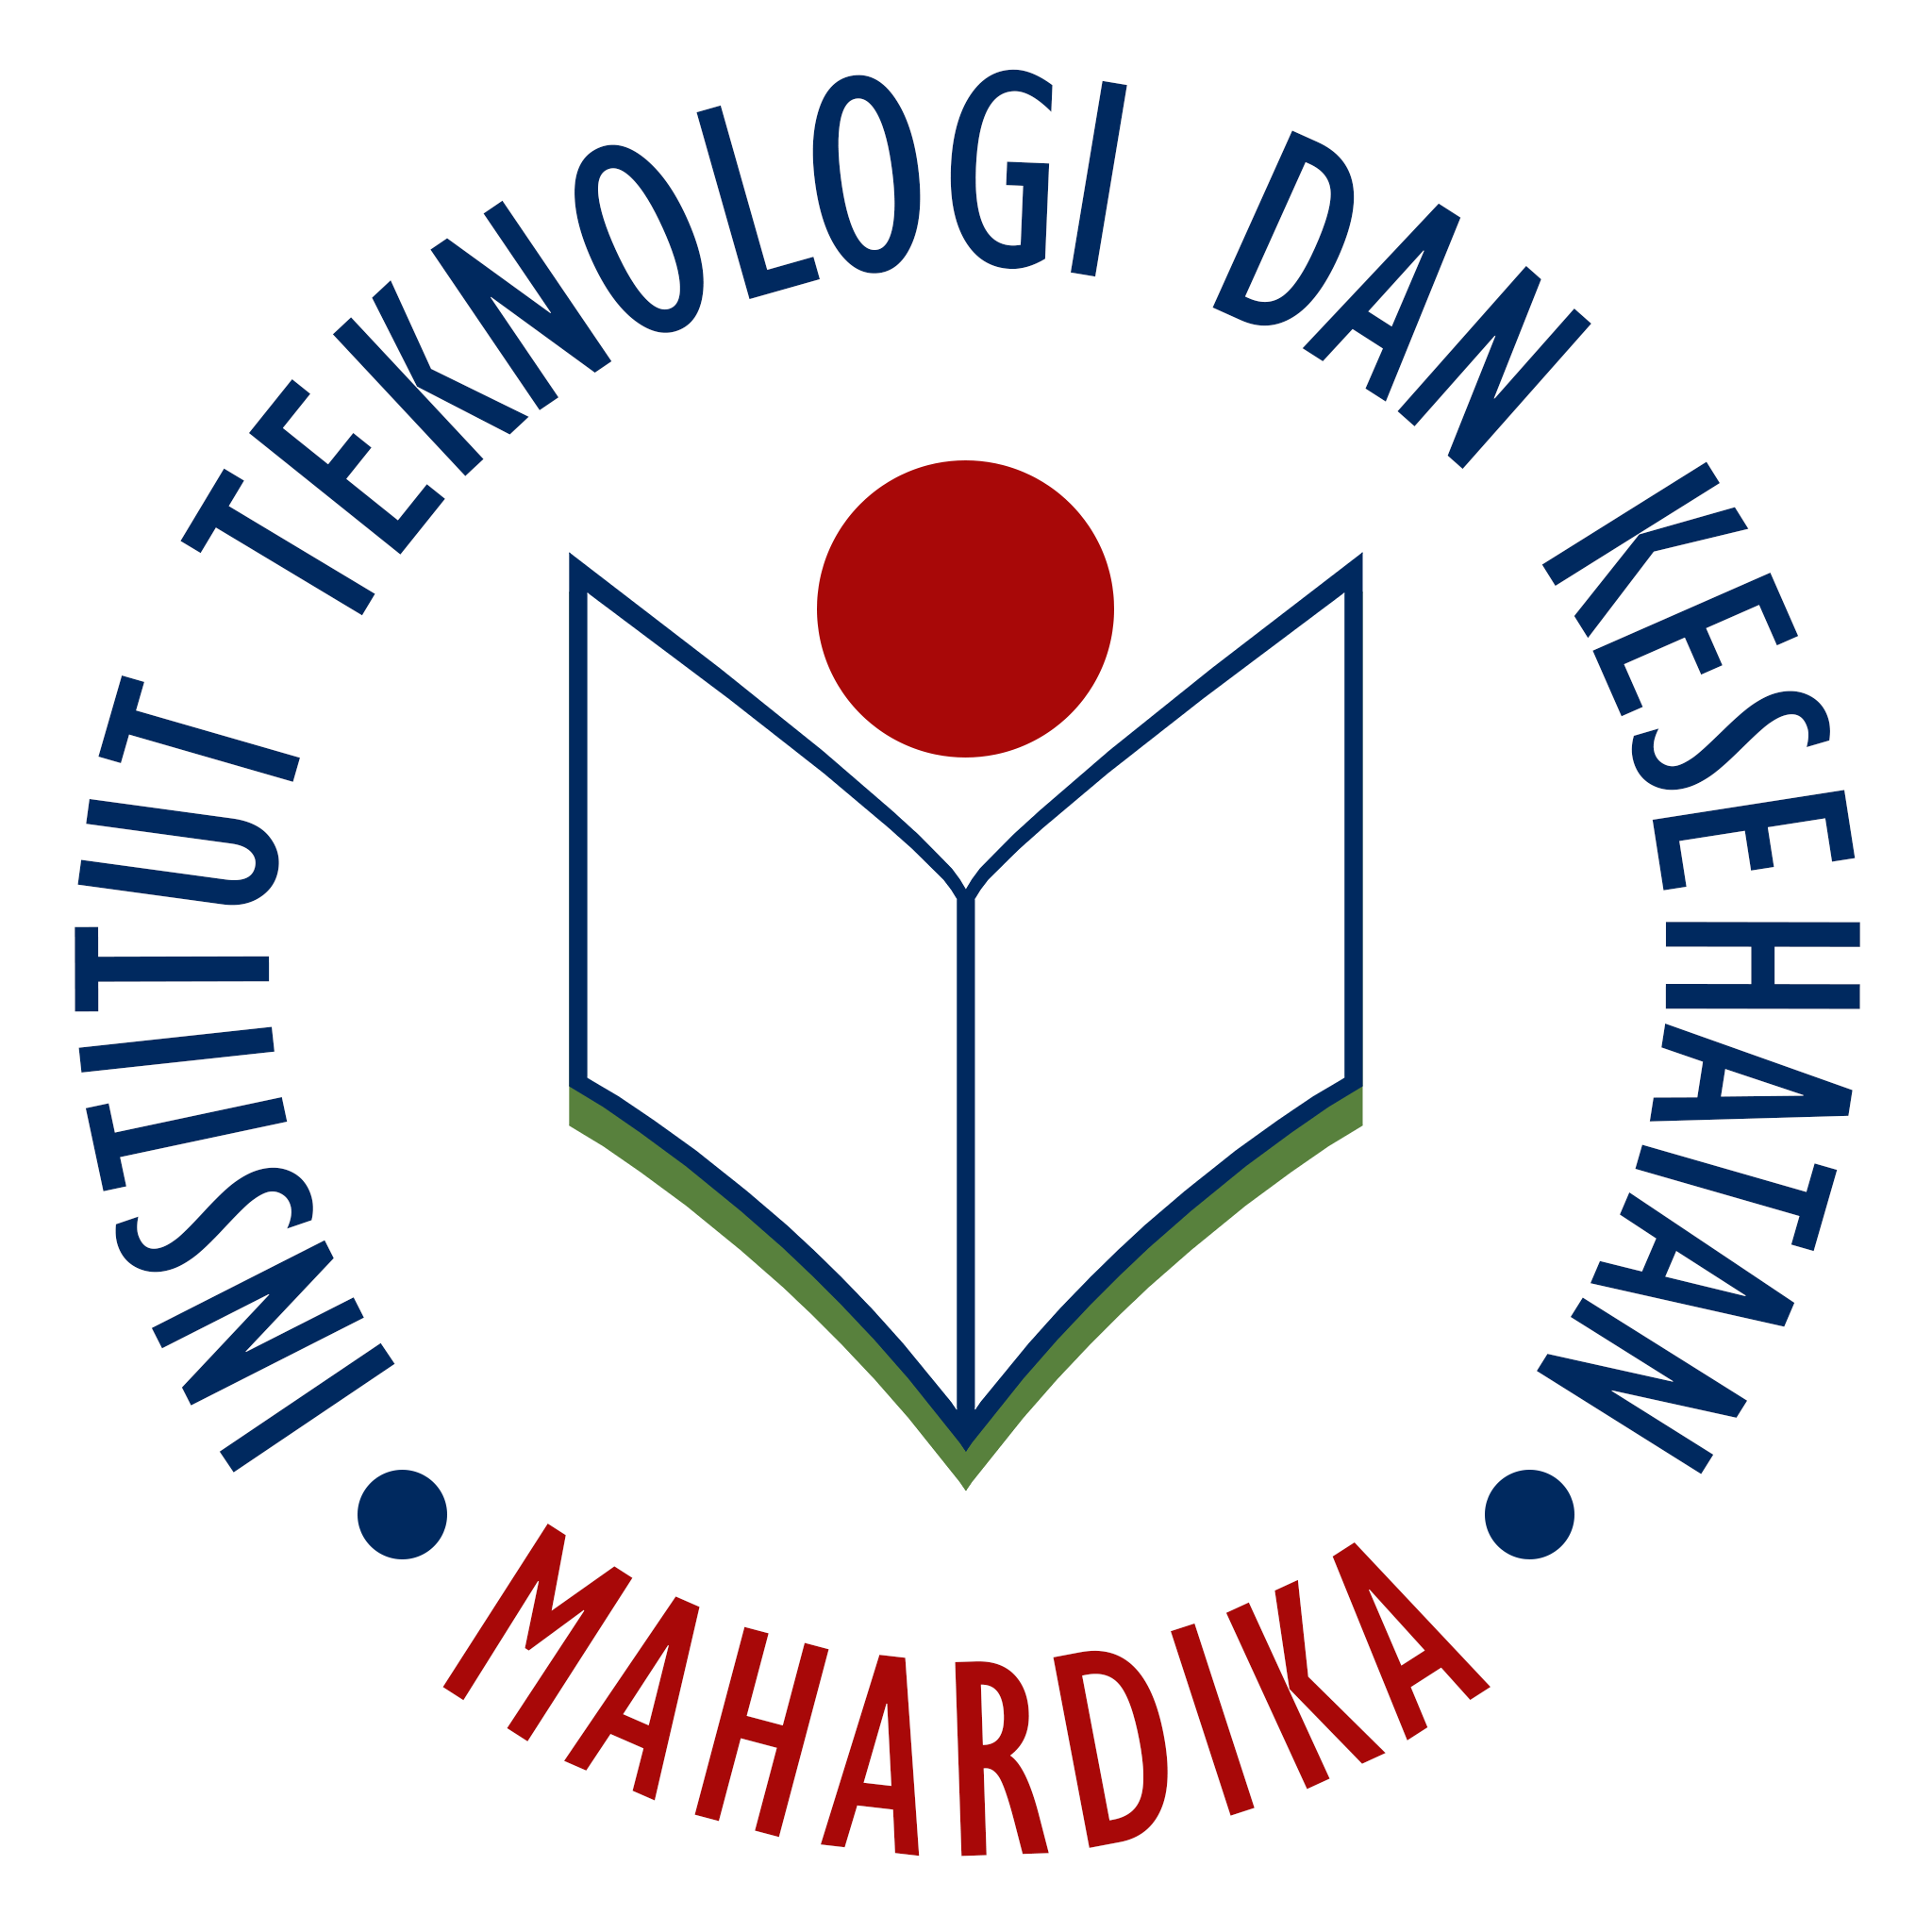 Institut Mahardika